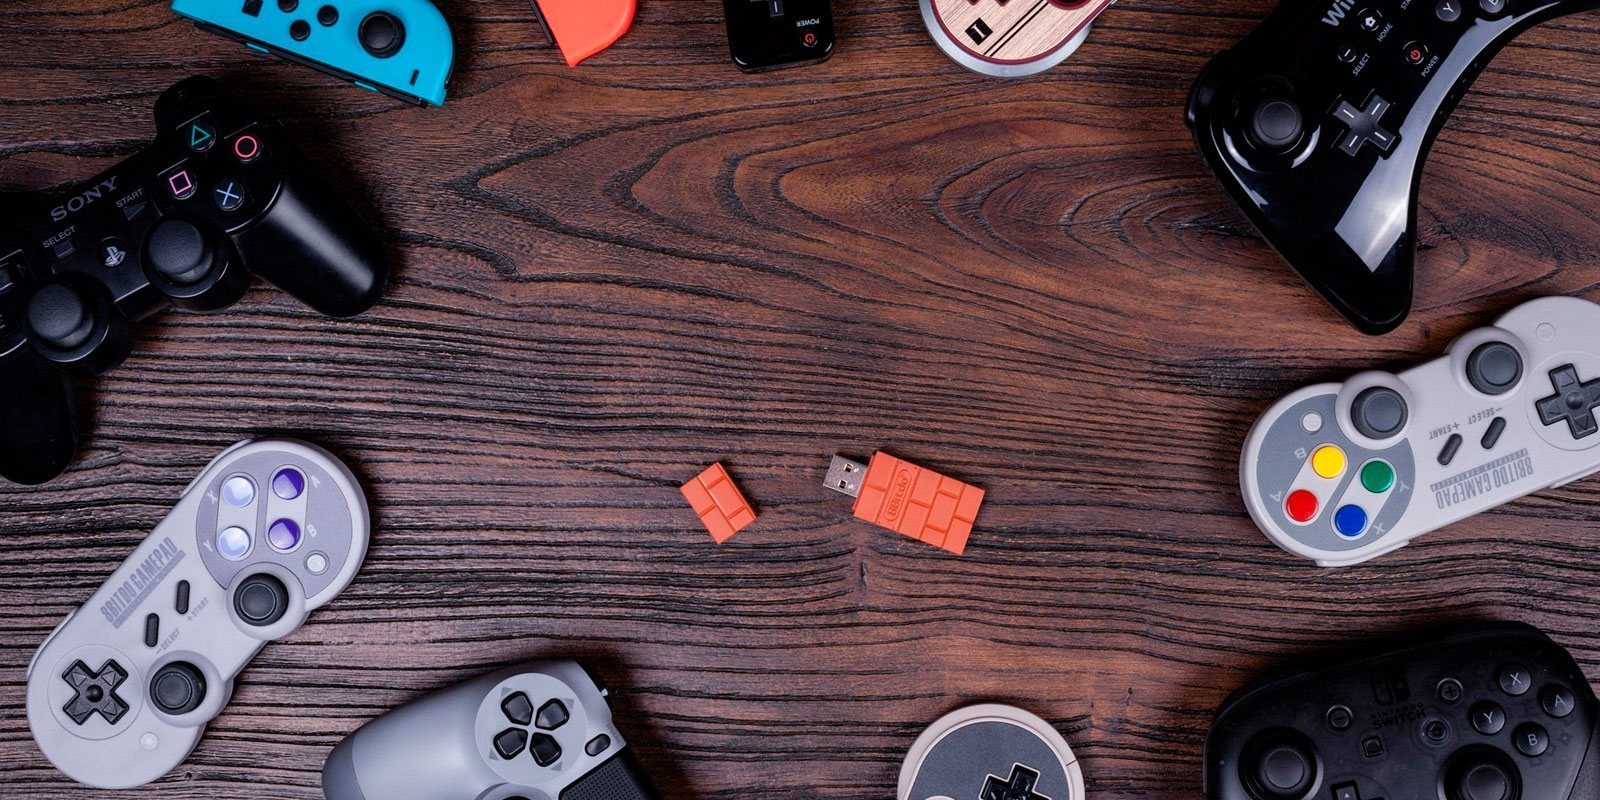 8Bitdo lanza un adaptador para poder usar otros mandos en Nintendo Switch